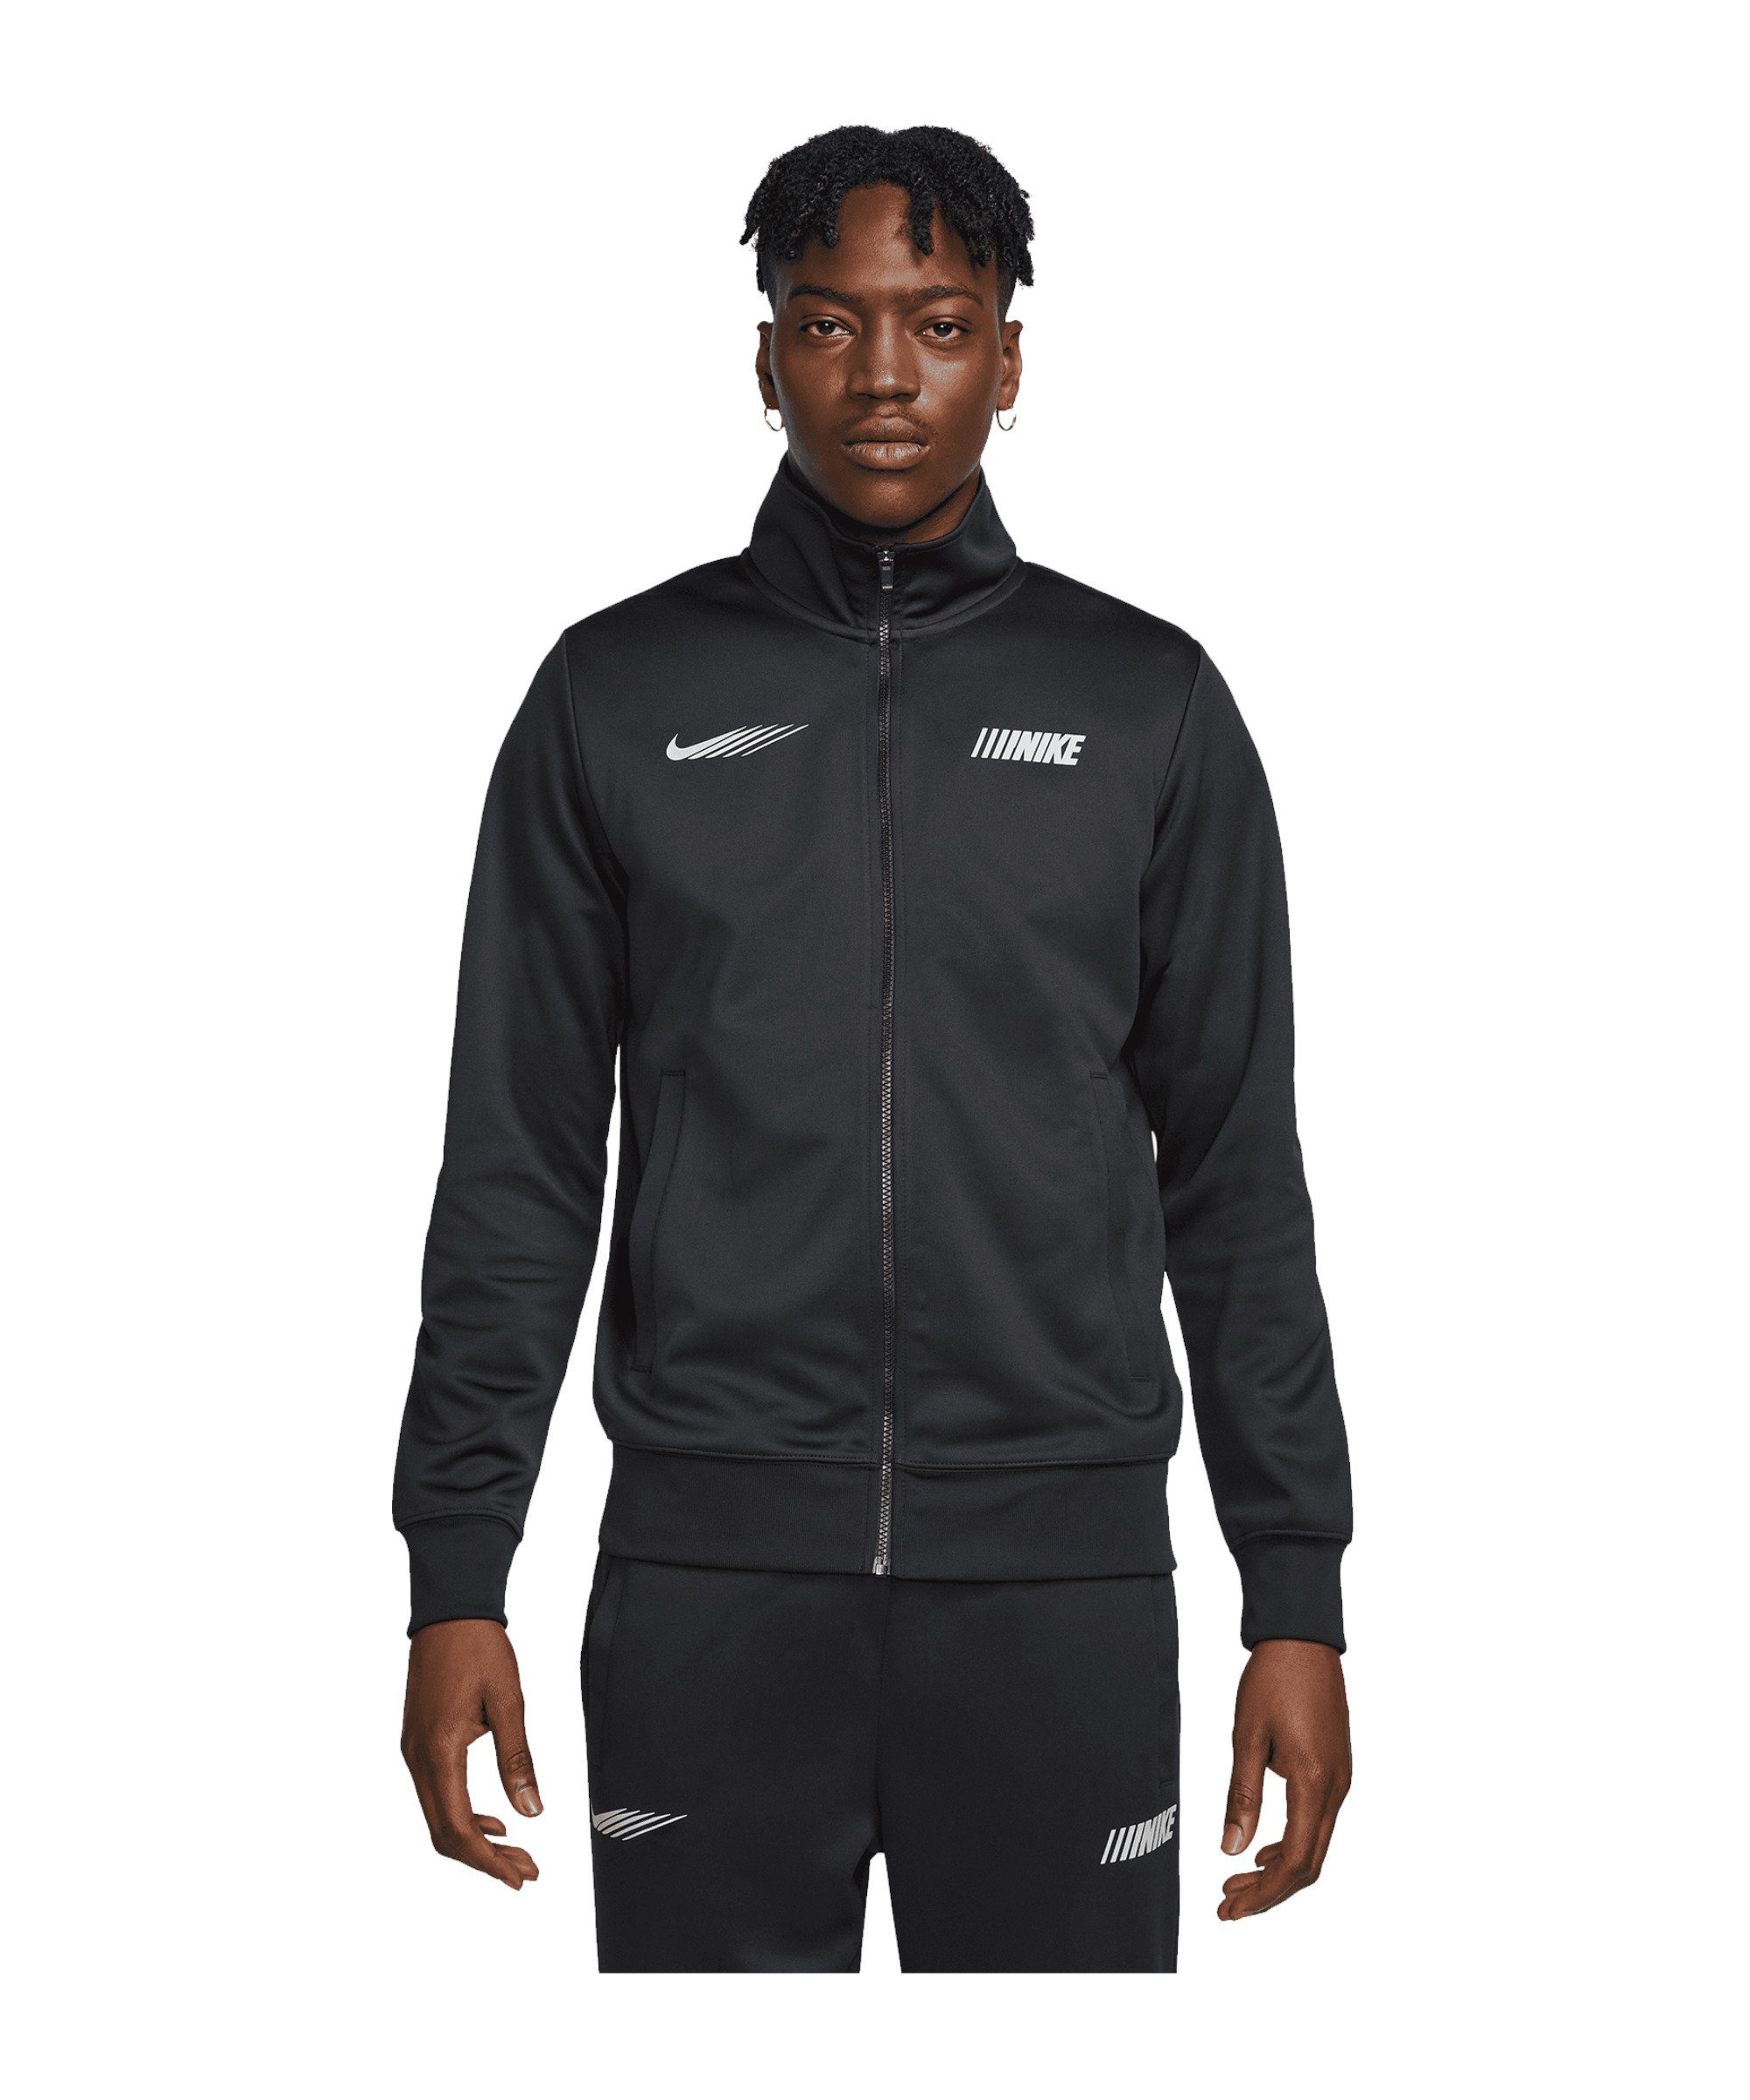 Nike Sportswear Sweatjacke Standart Issue Jacke schwarz | Jacken